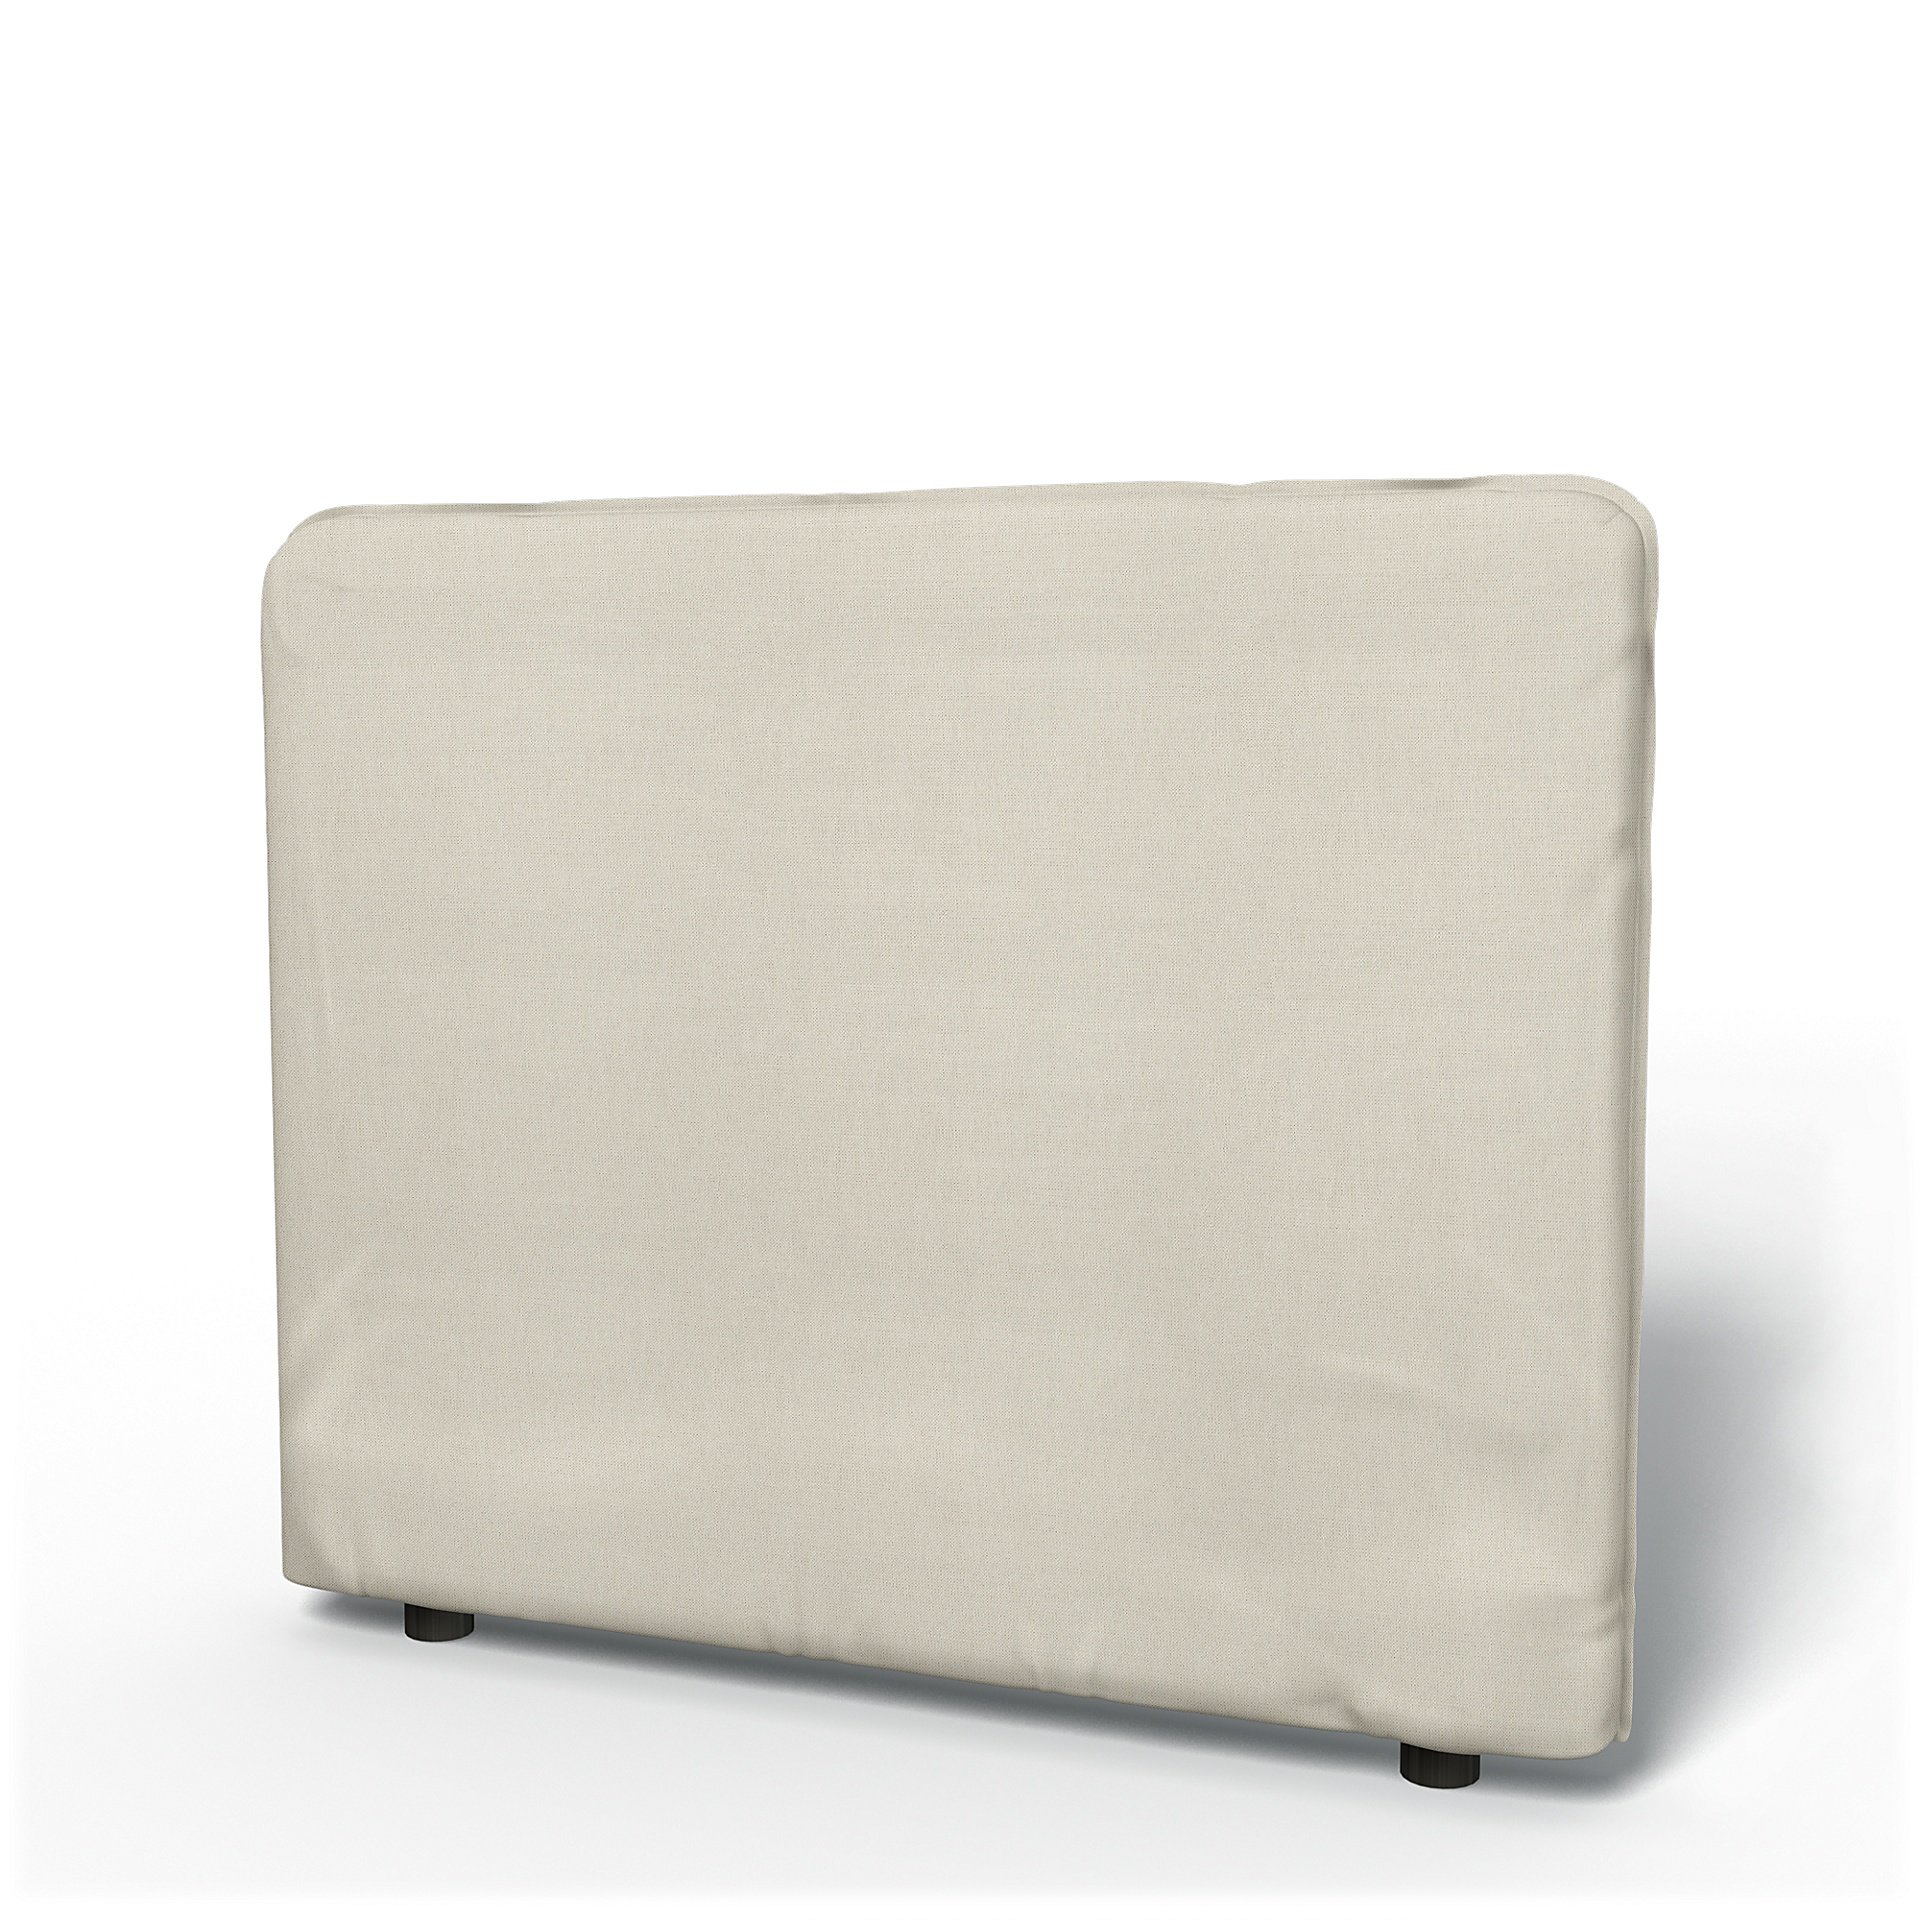 IKEA - Vallentuna Low Backrest Cover 100x80cm 39x32in, Unbleached, Linen - Bemz